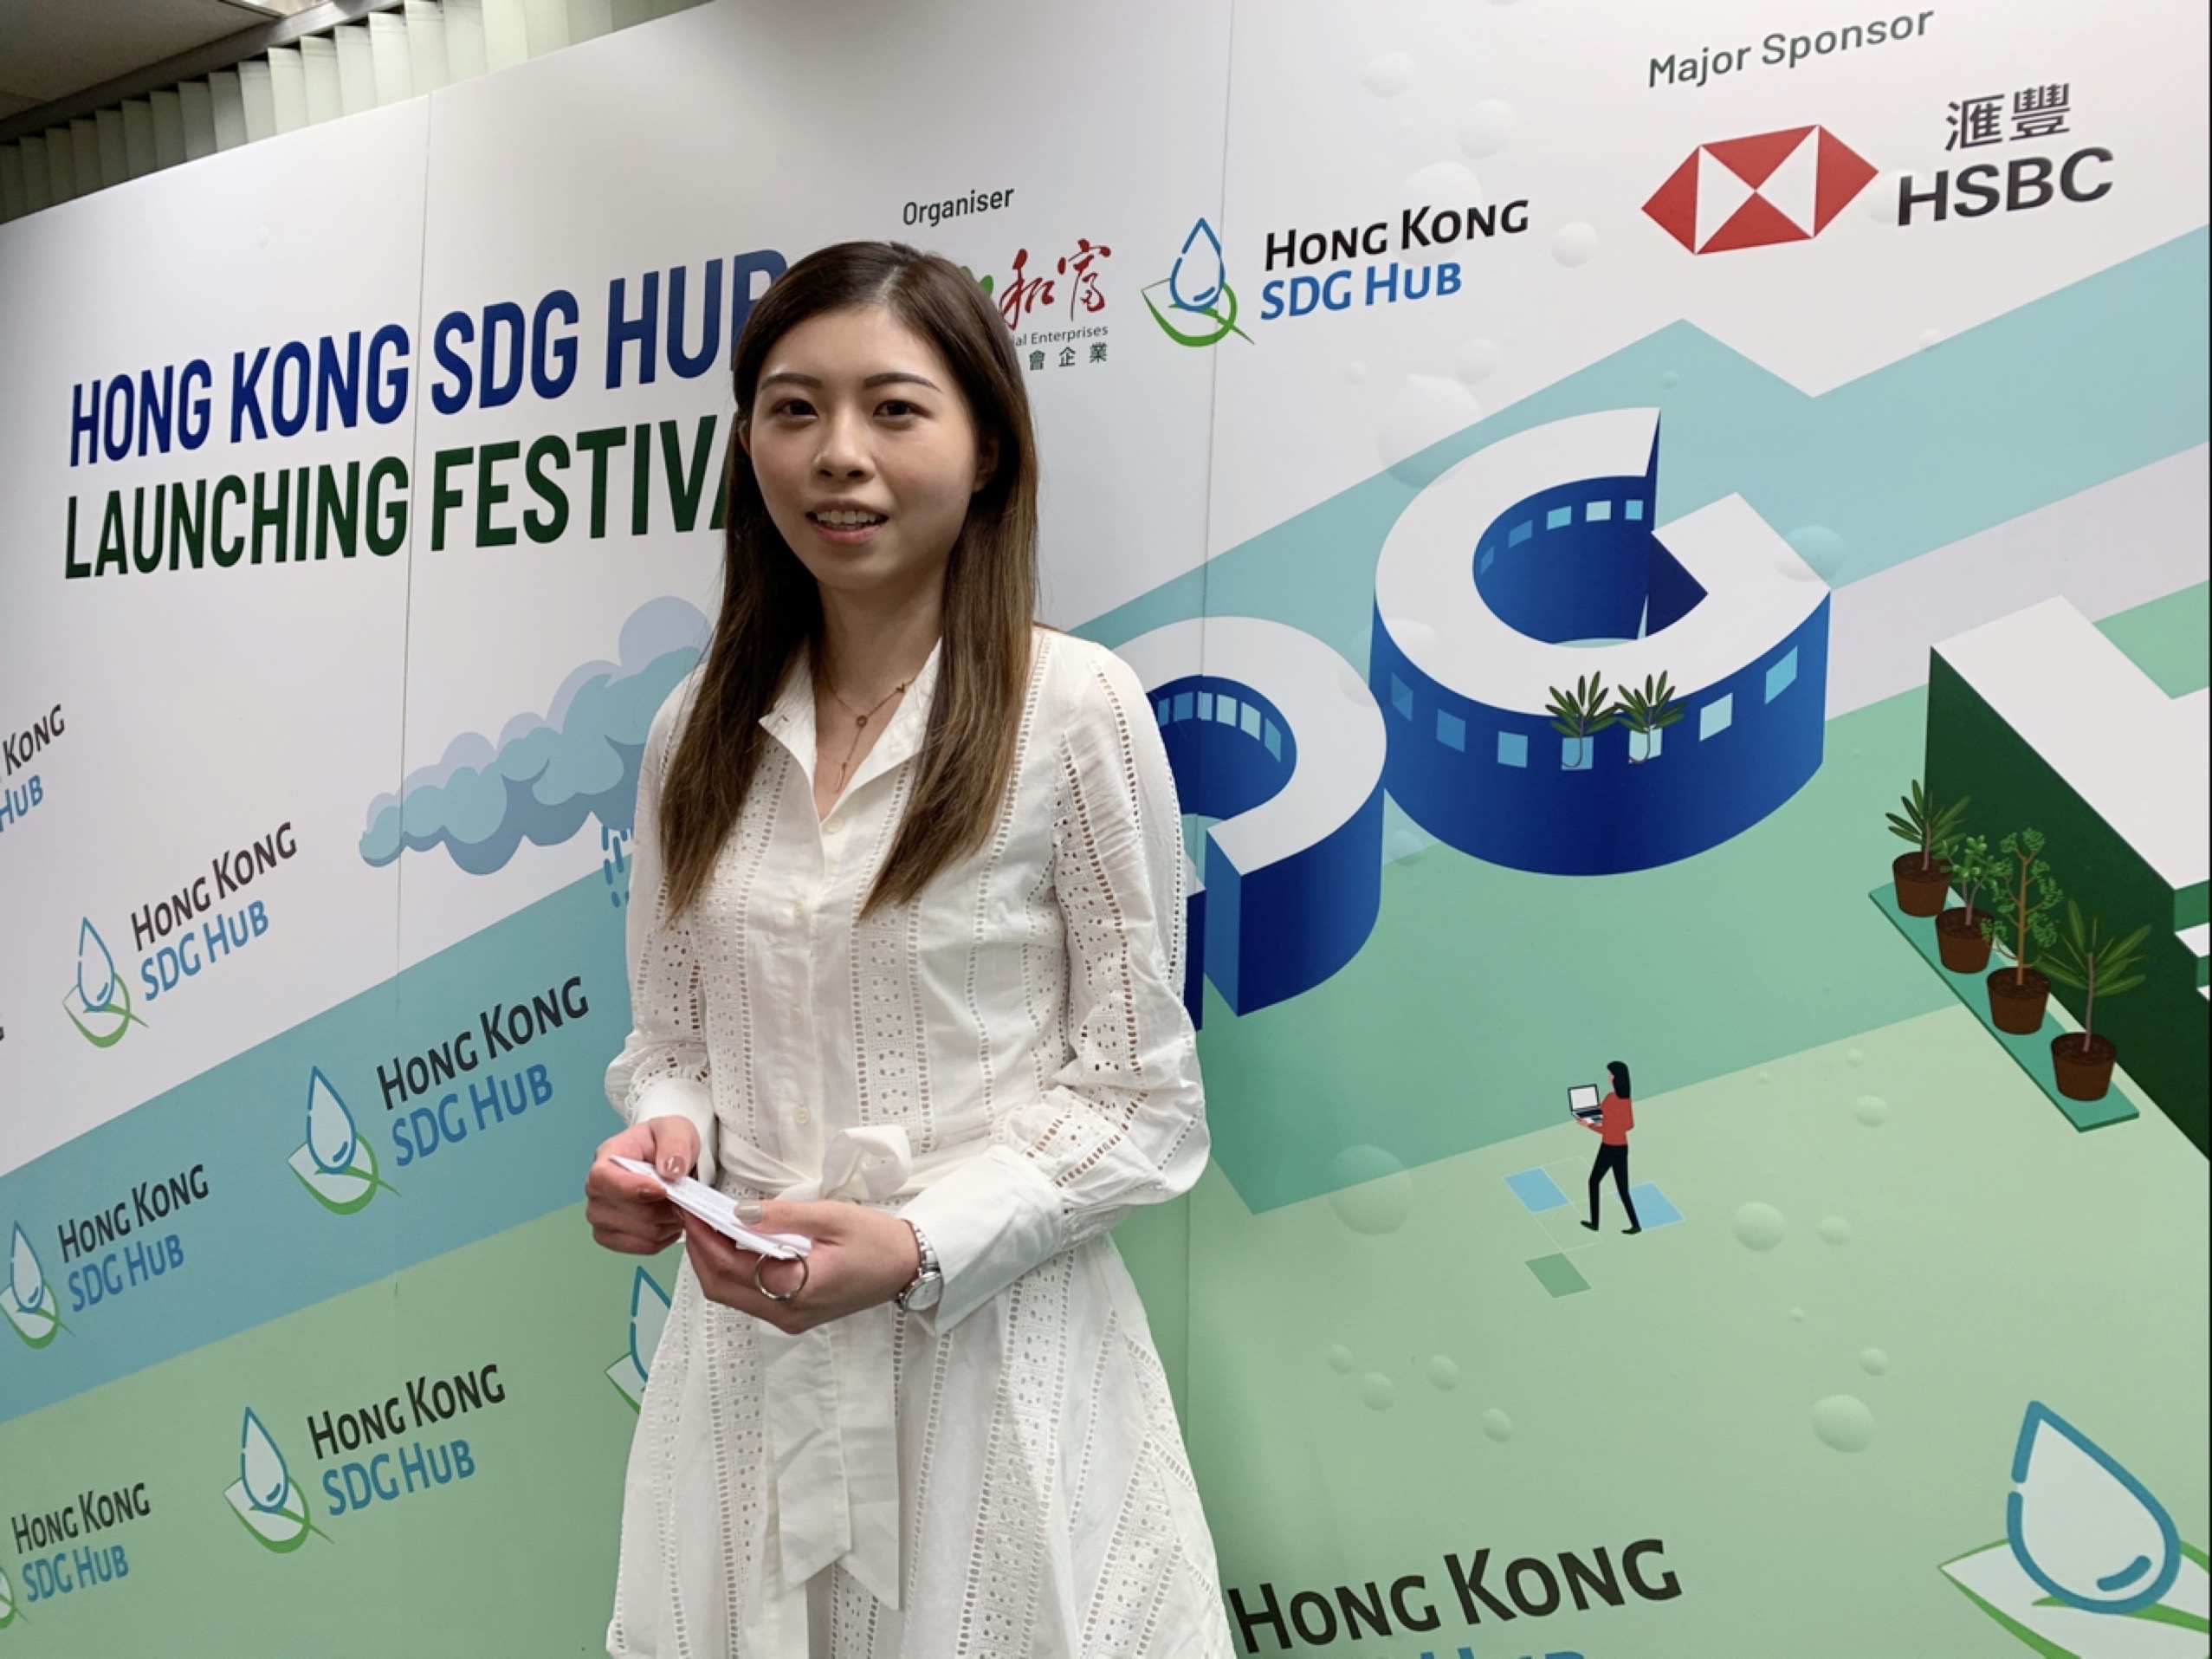 Kelly Lau 劉錦紅之司儀主持紀錄: 匯豐贊助 - Hong Kong SDG Hub 活動主持